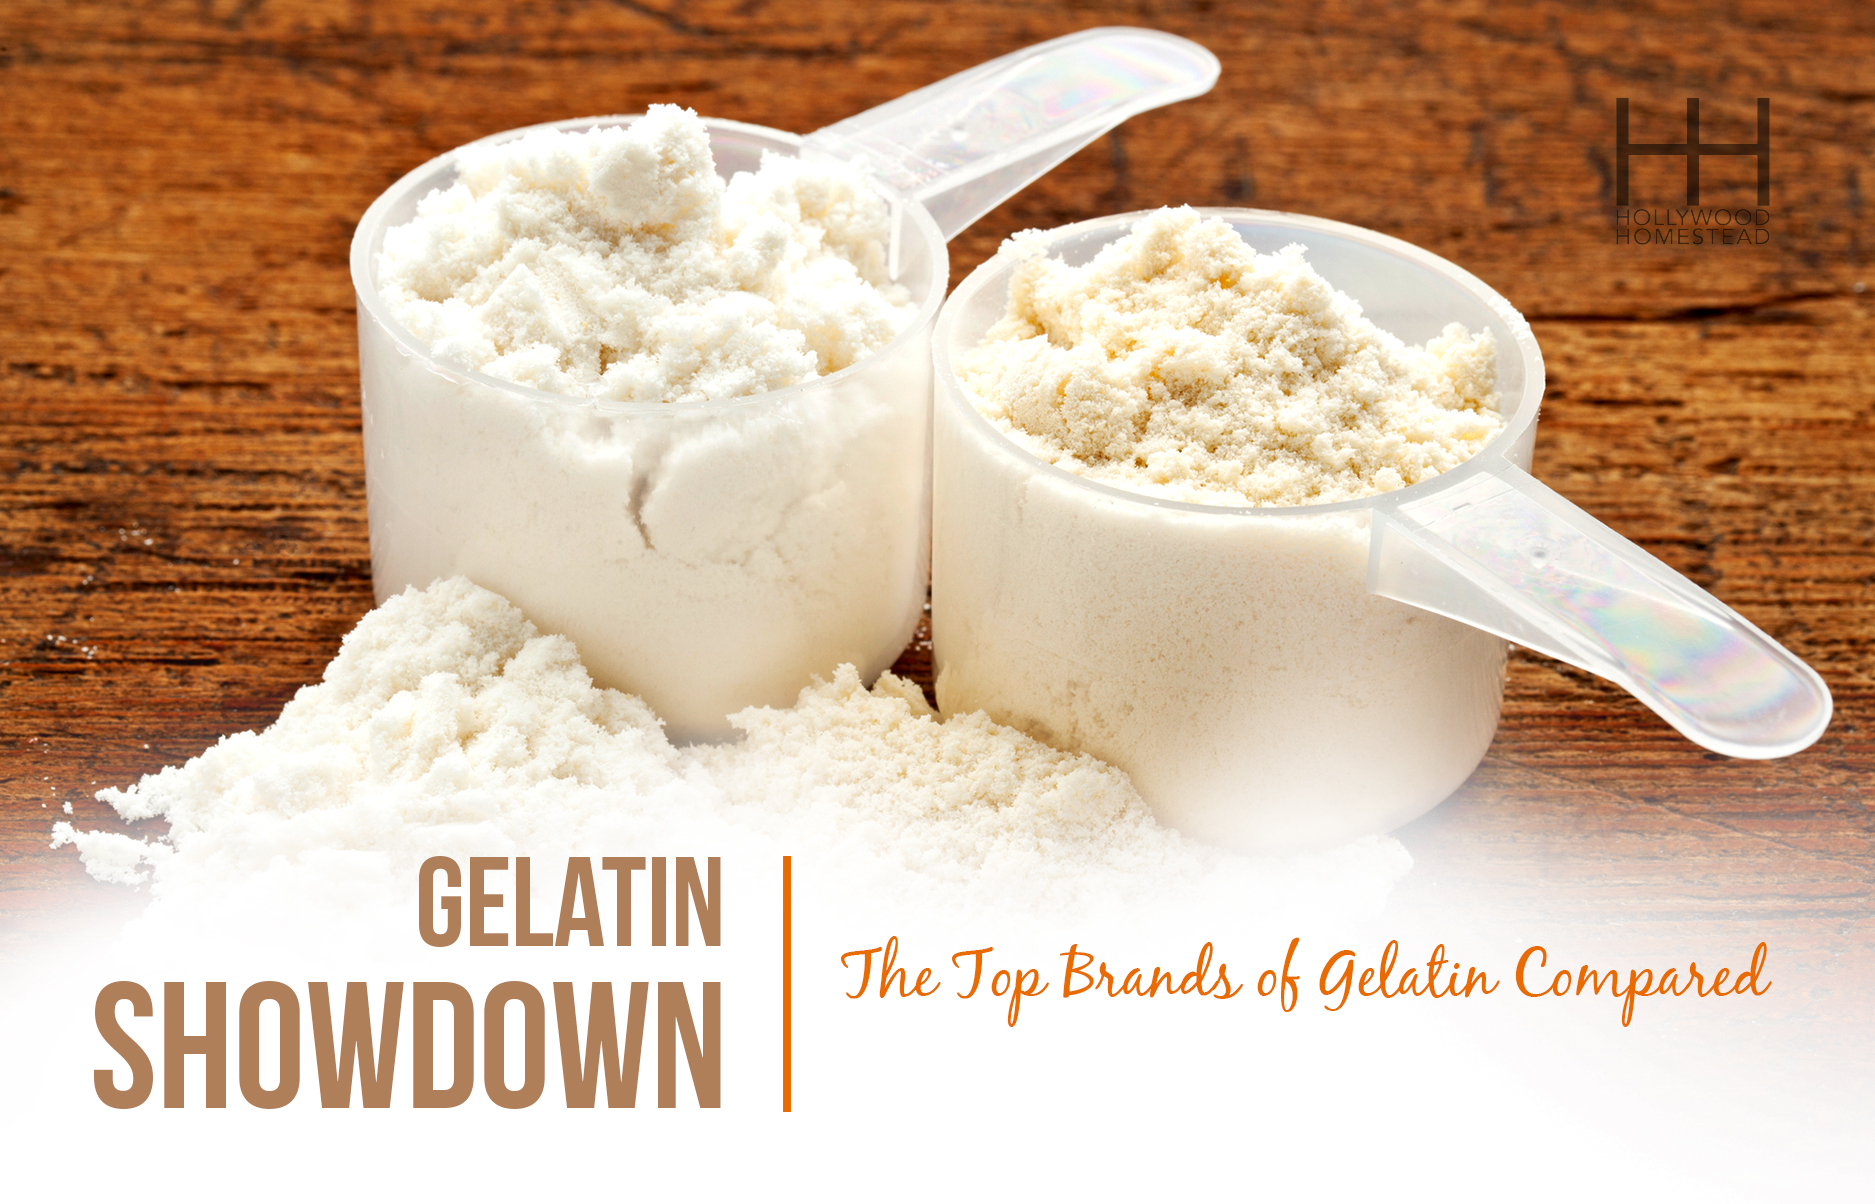 Gelatin Showdown: The Top Brands of Gelatin Compared